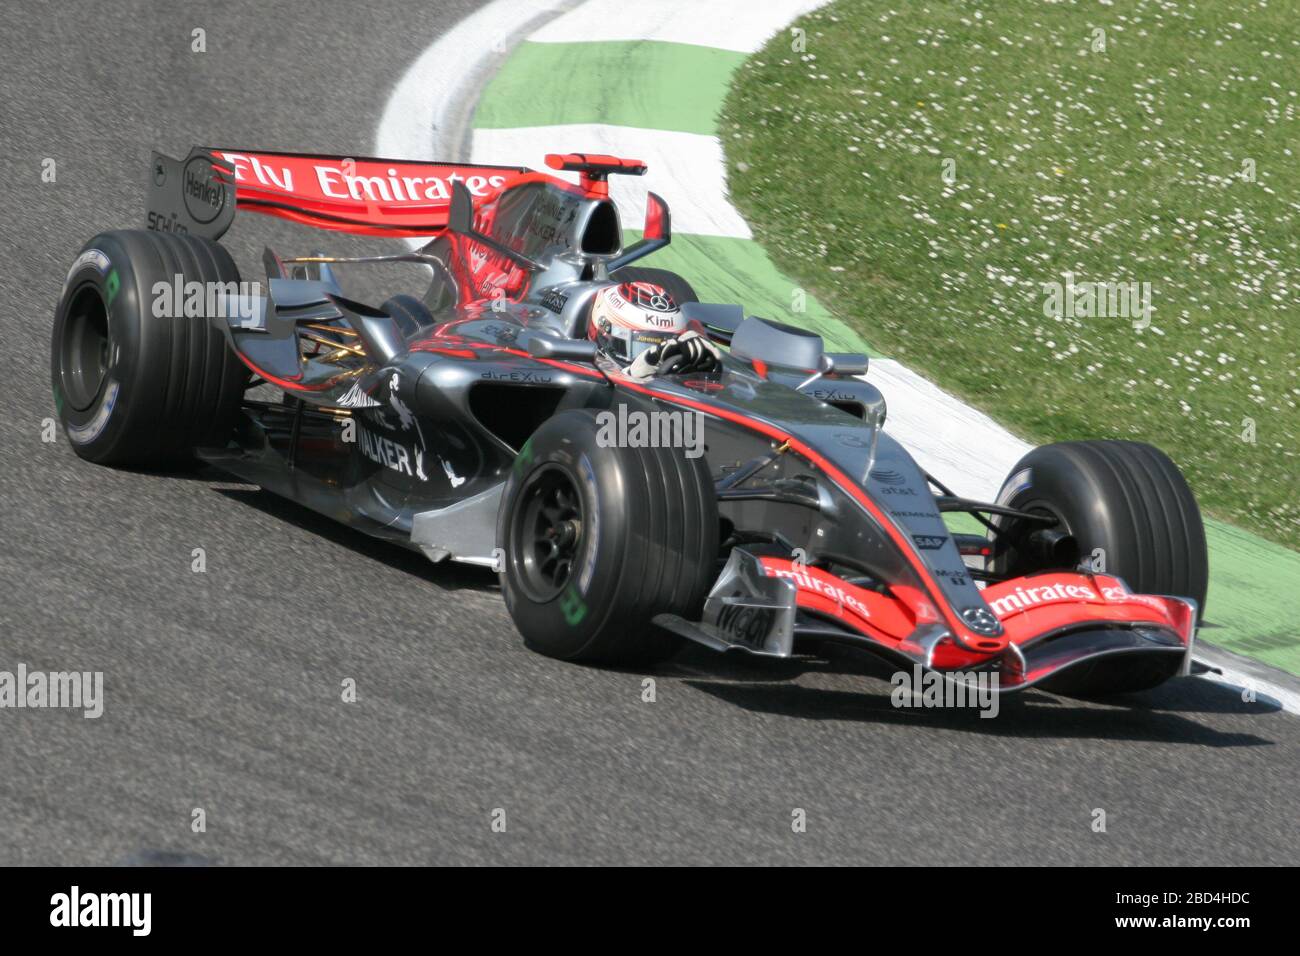 Kimi Raikkonen, McLaren Mercedes MP4-21, San Marino GP 2006, Imola Stock  Photo - Alamy